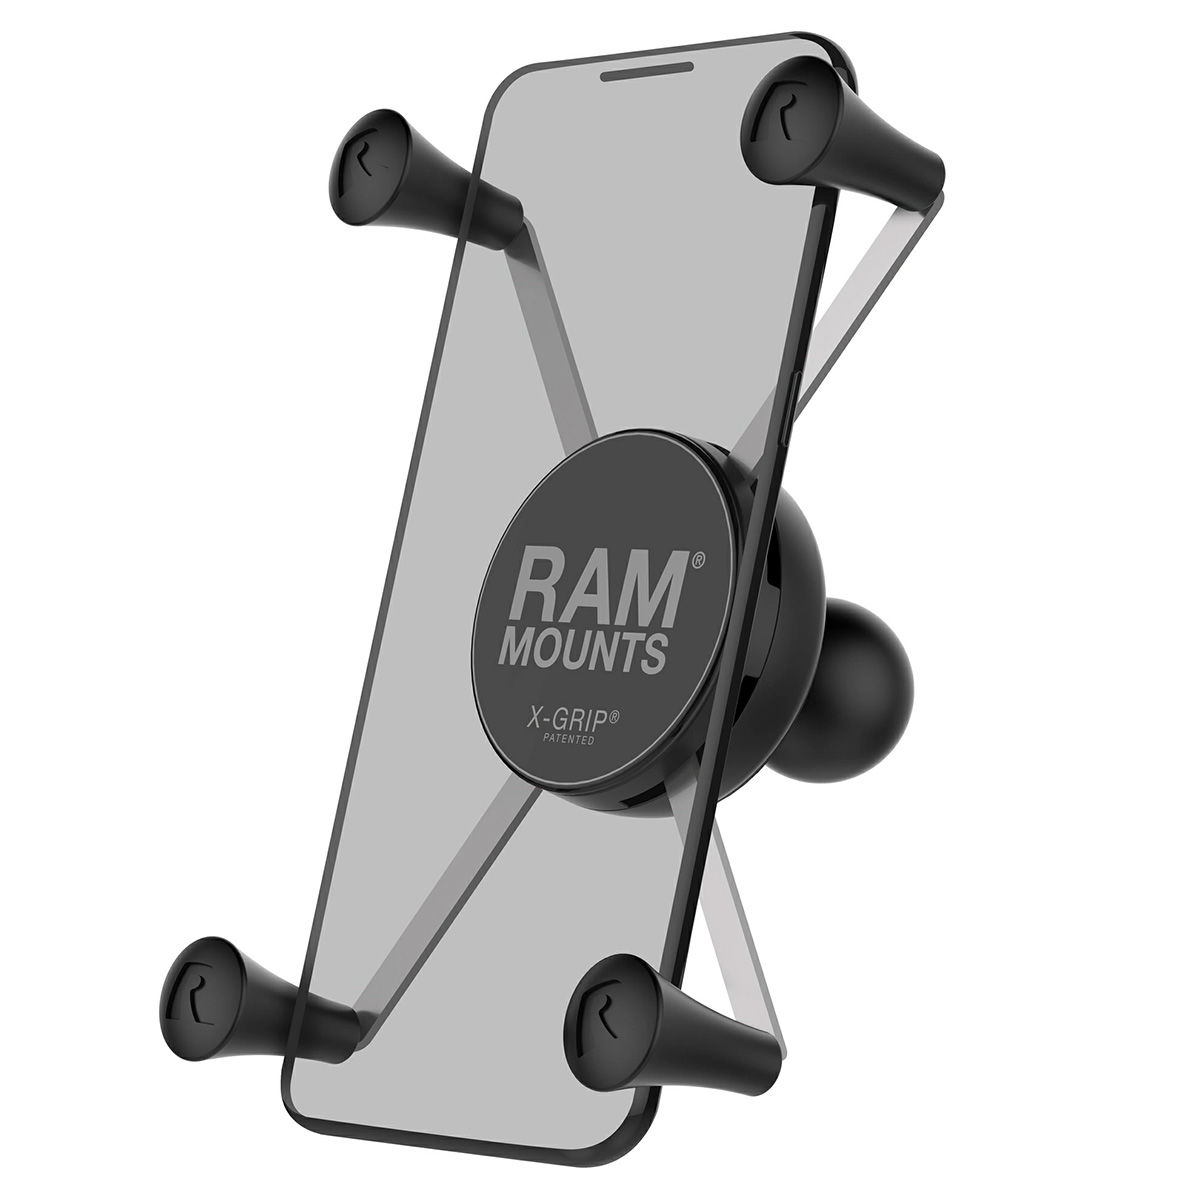 Support pour smartphone X-GRIP seul, boule B, grande taille téléphone > 5", RAM